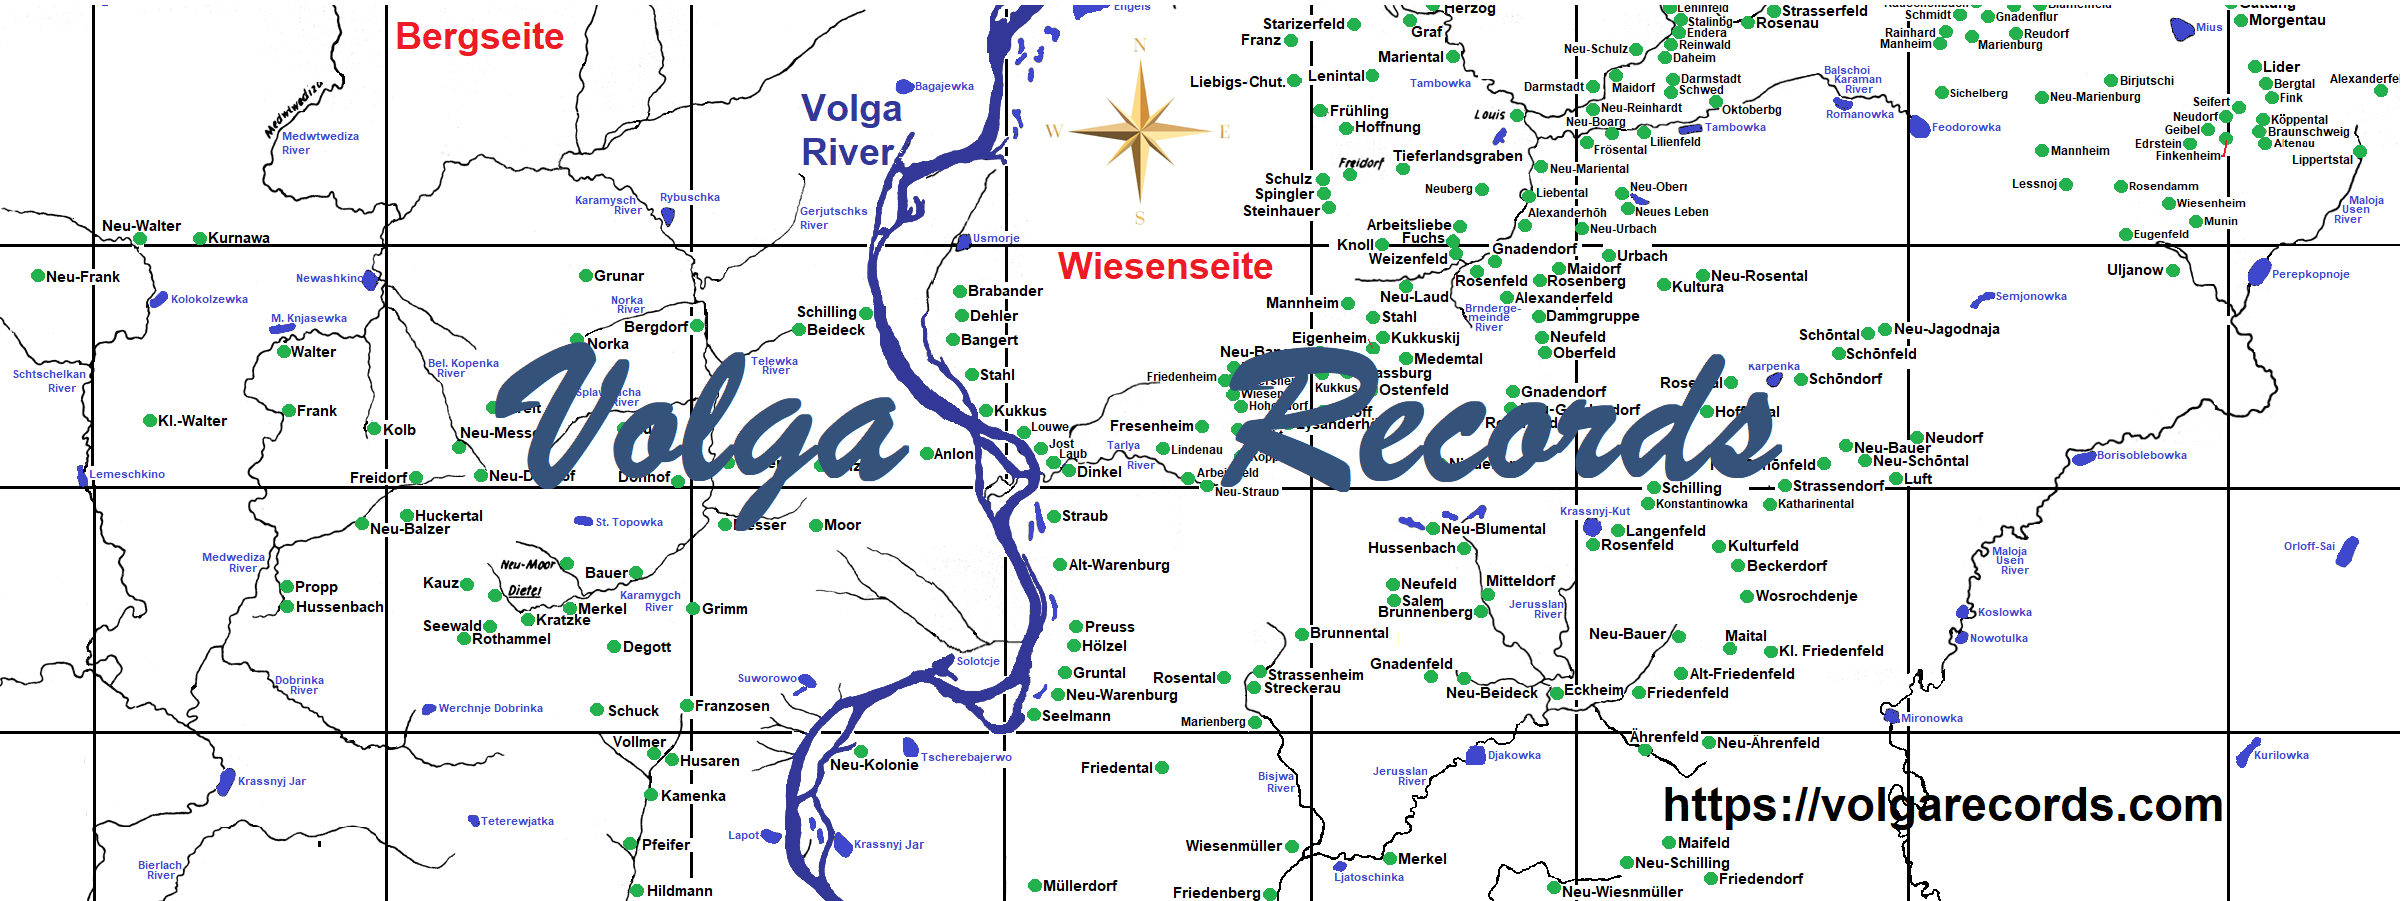 Volga Parish Records Website